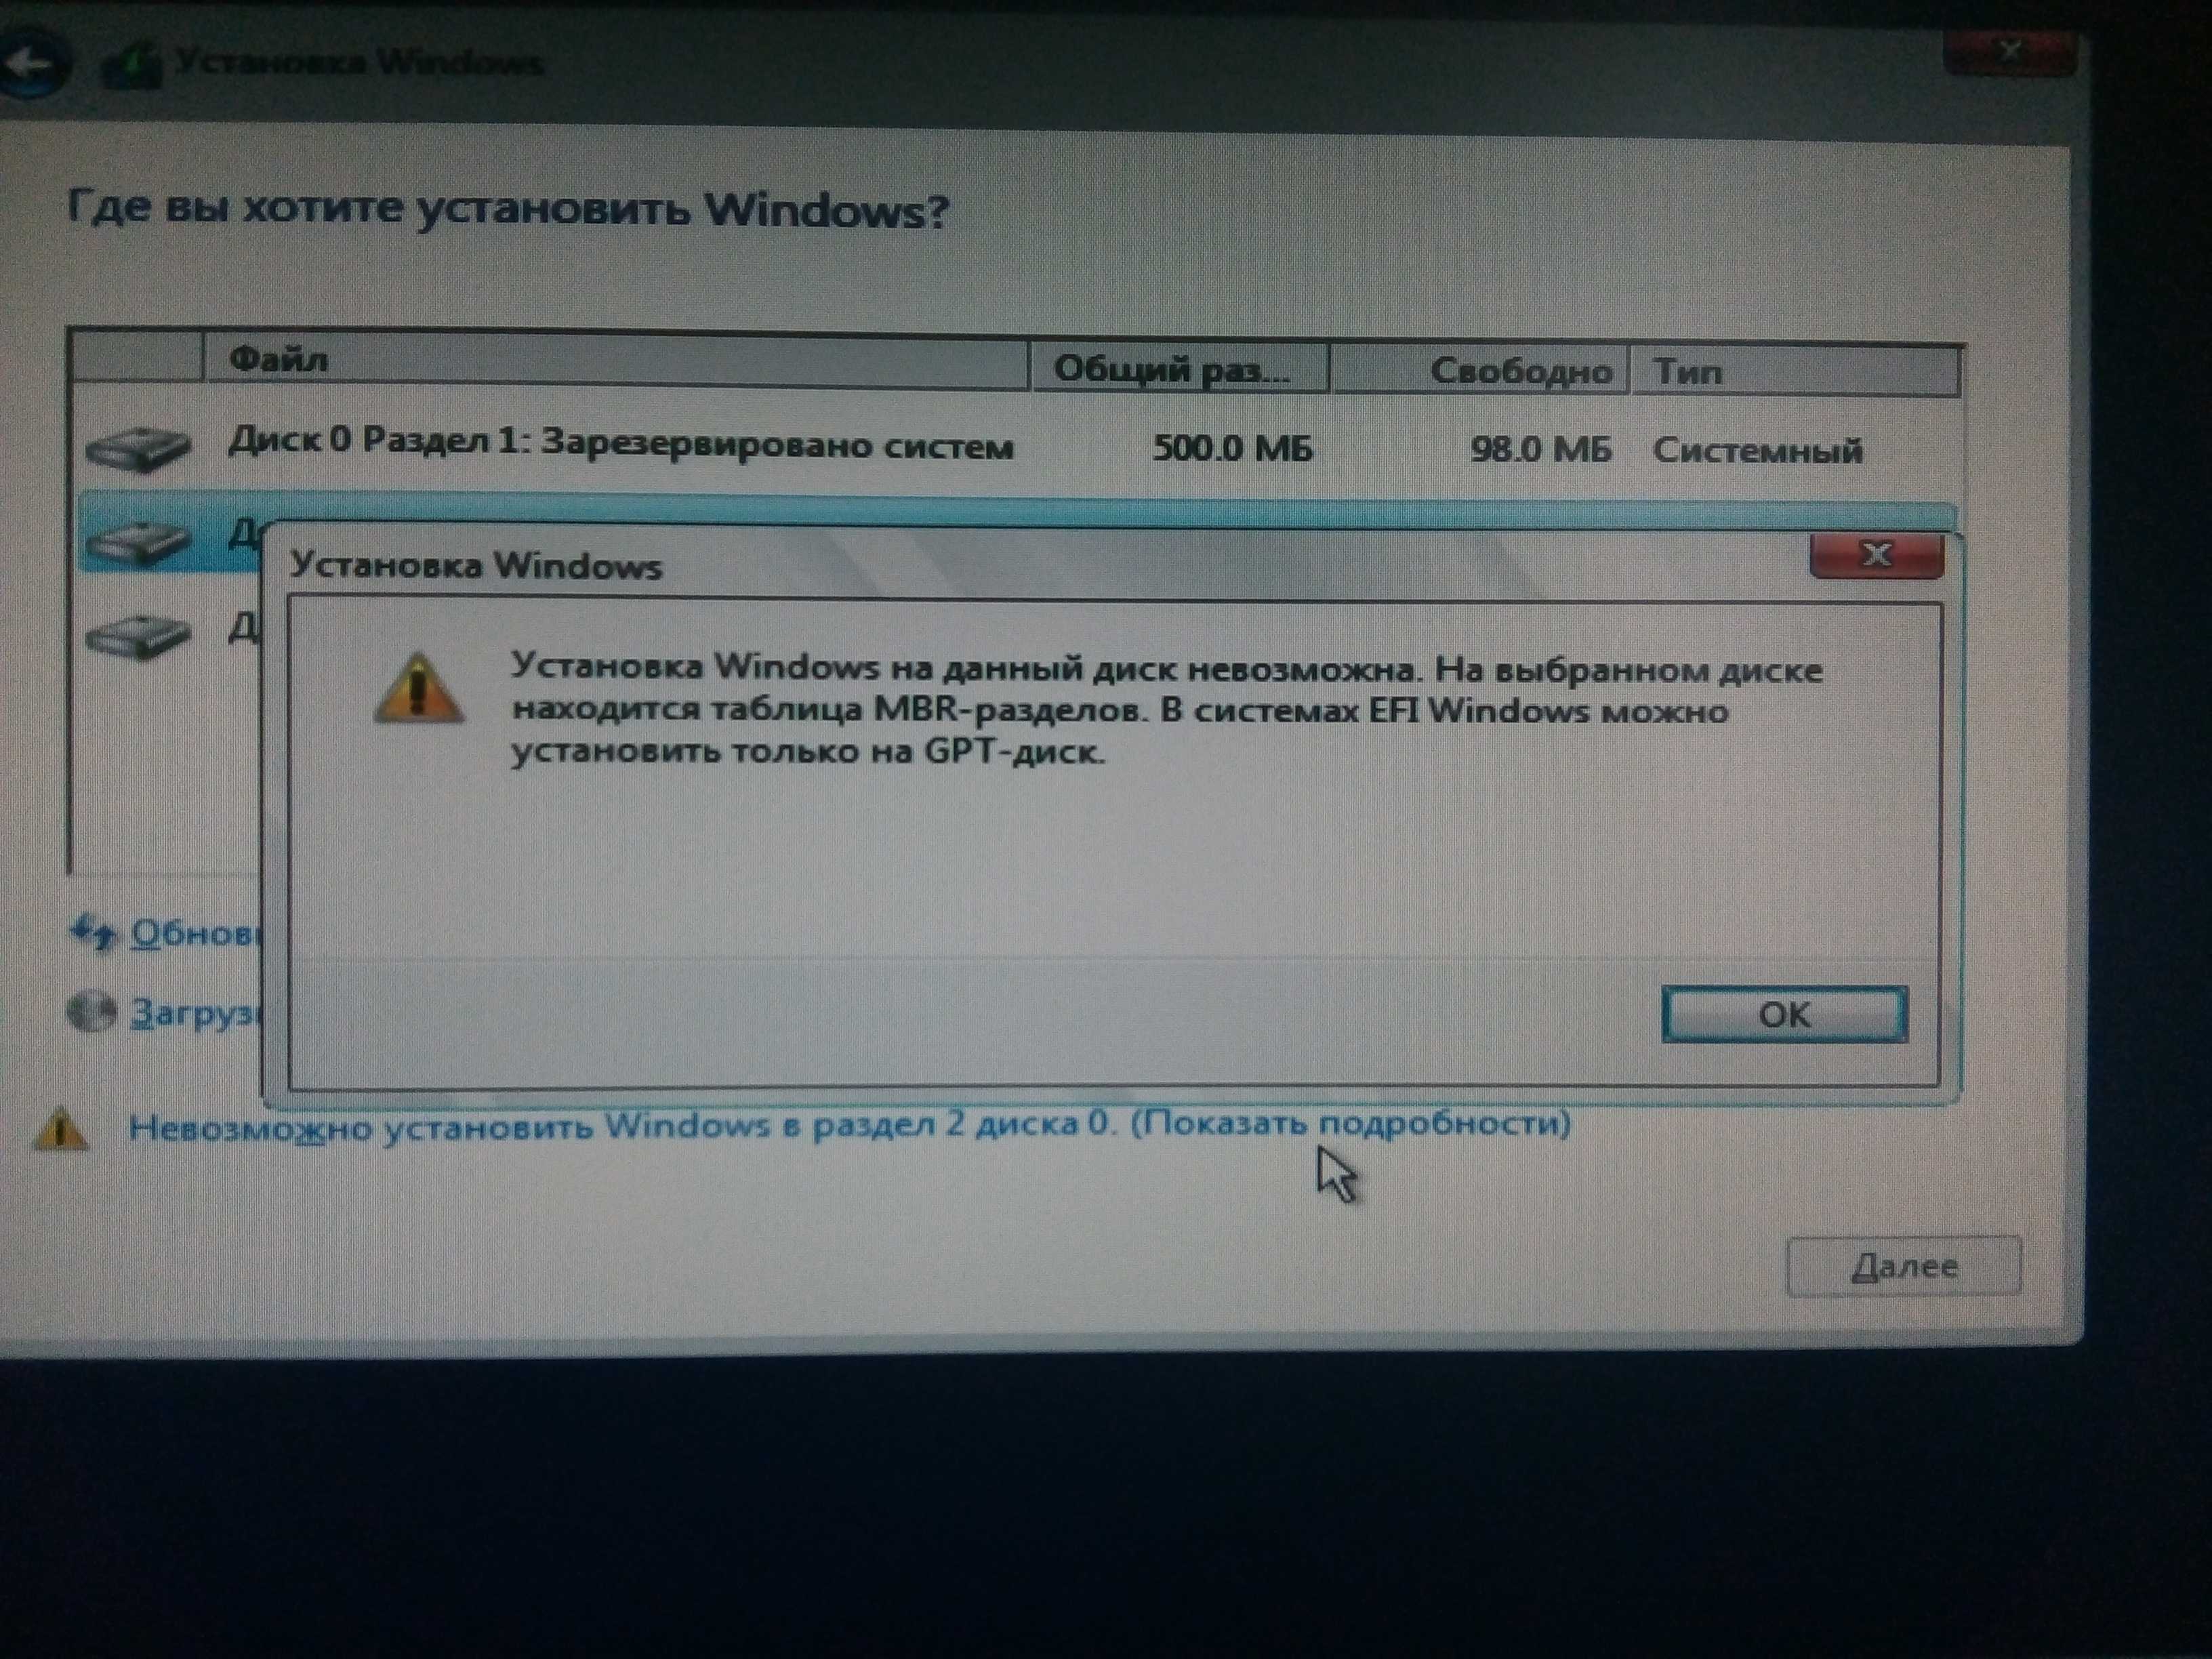 Установка windows на данный диск невозможна, как исправить ошибку?